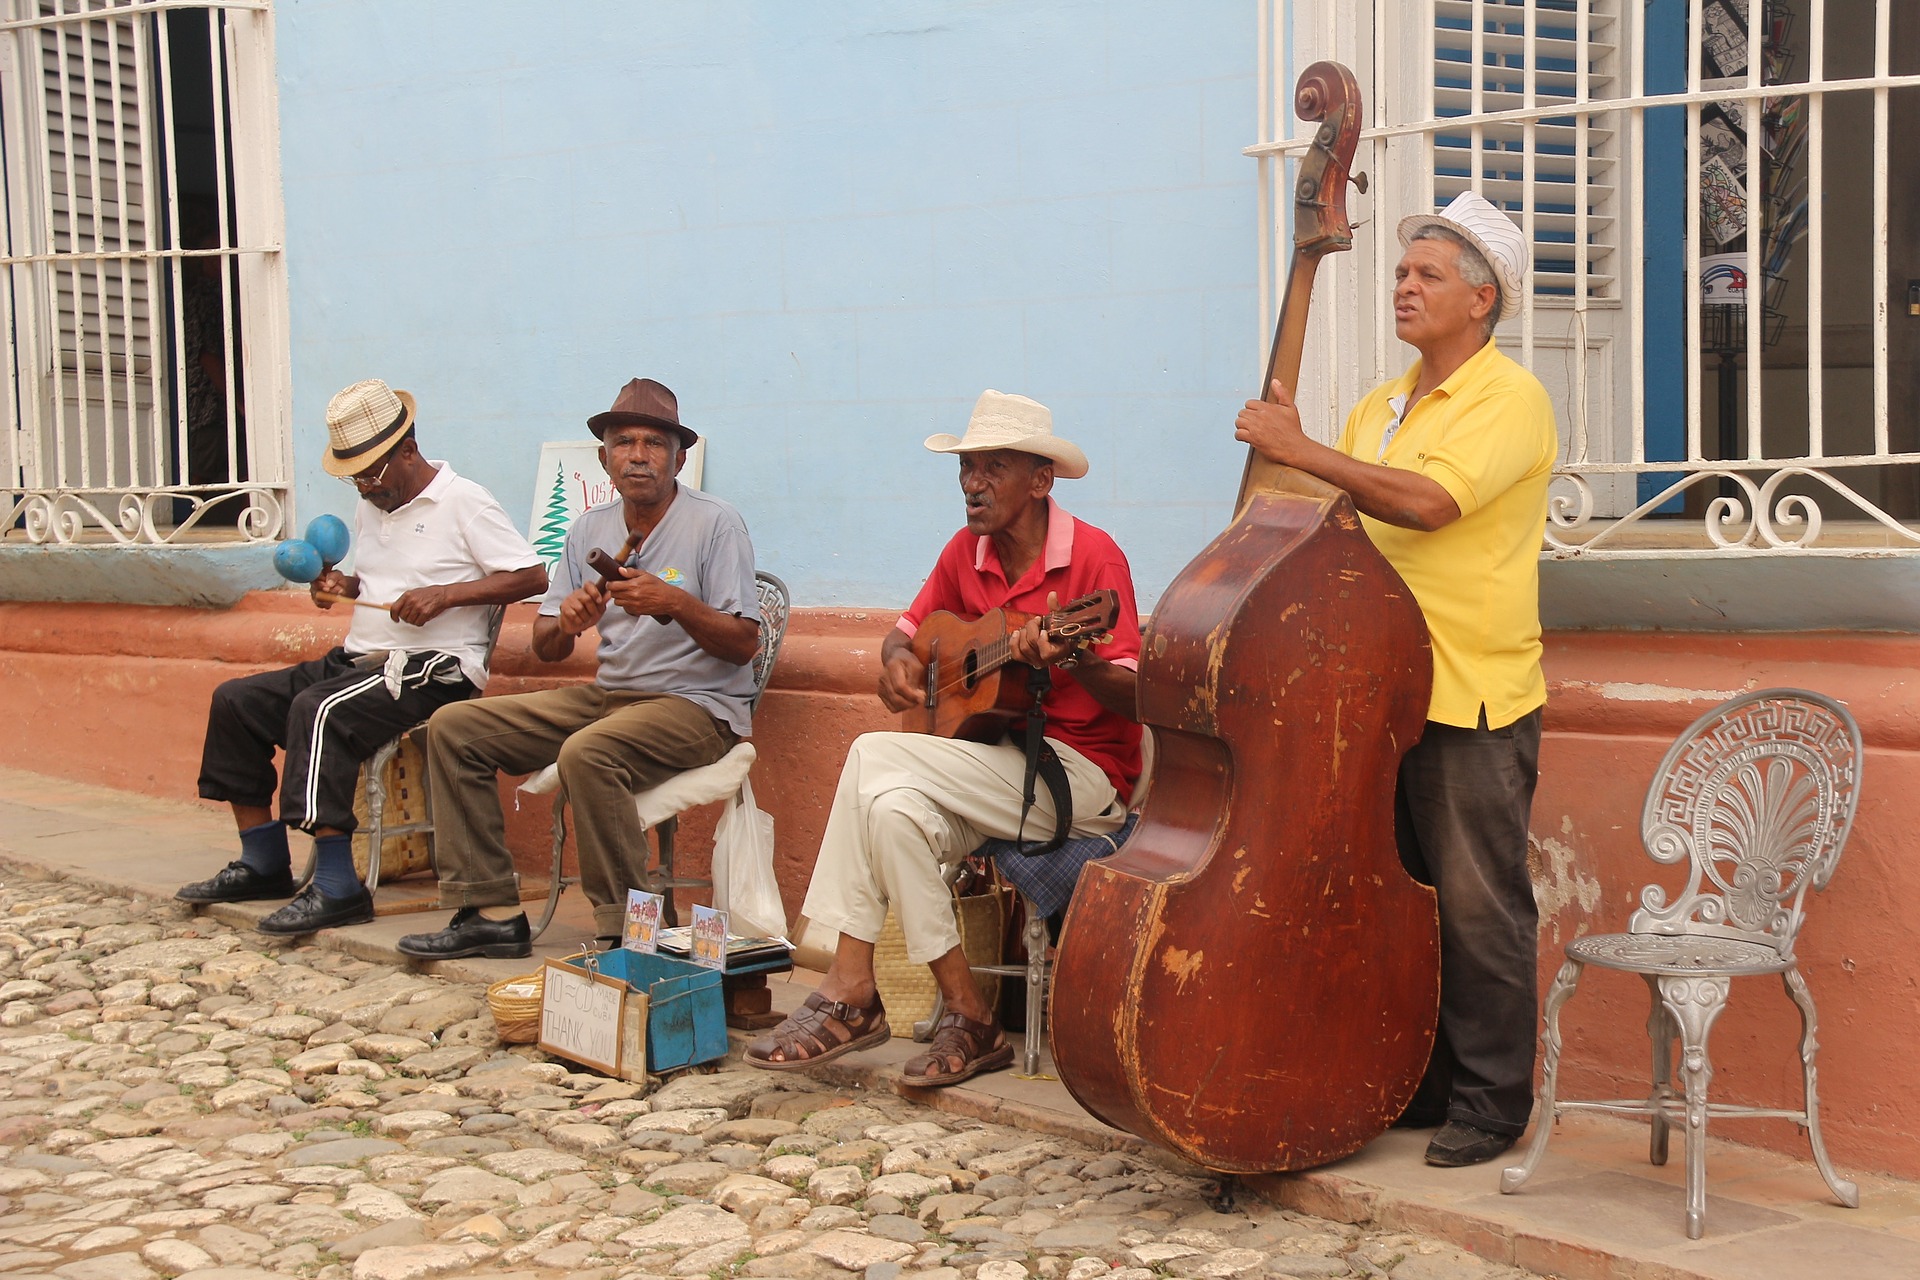 Gatemusikanter i Trinidad